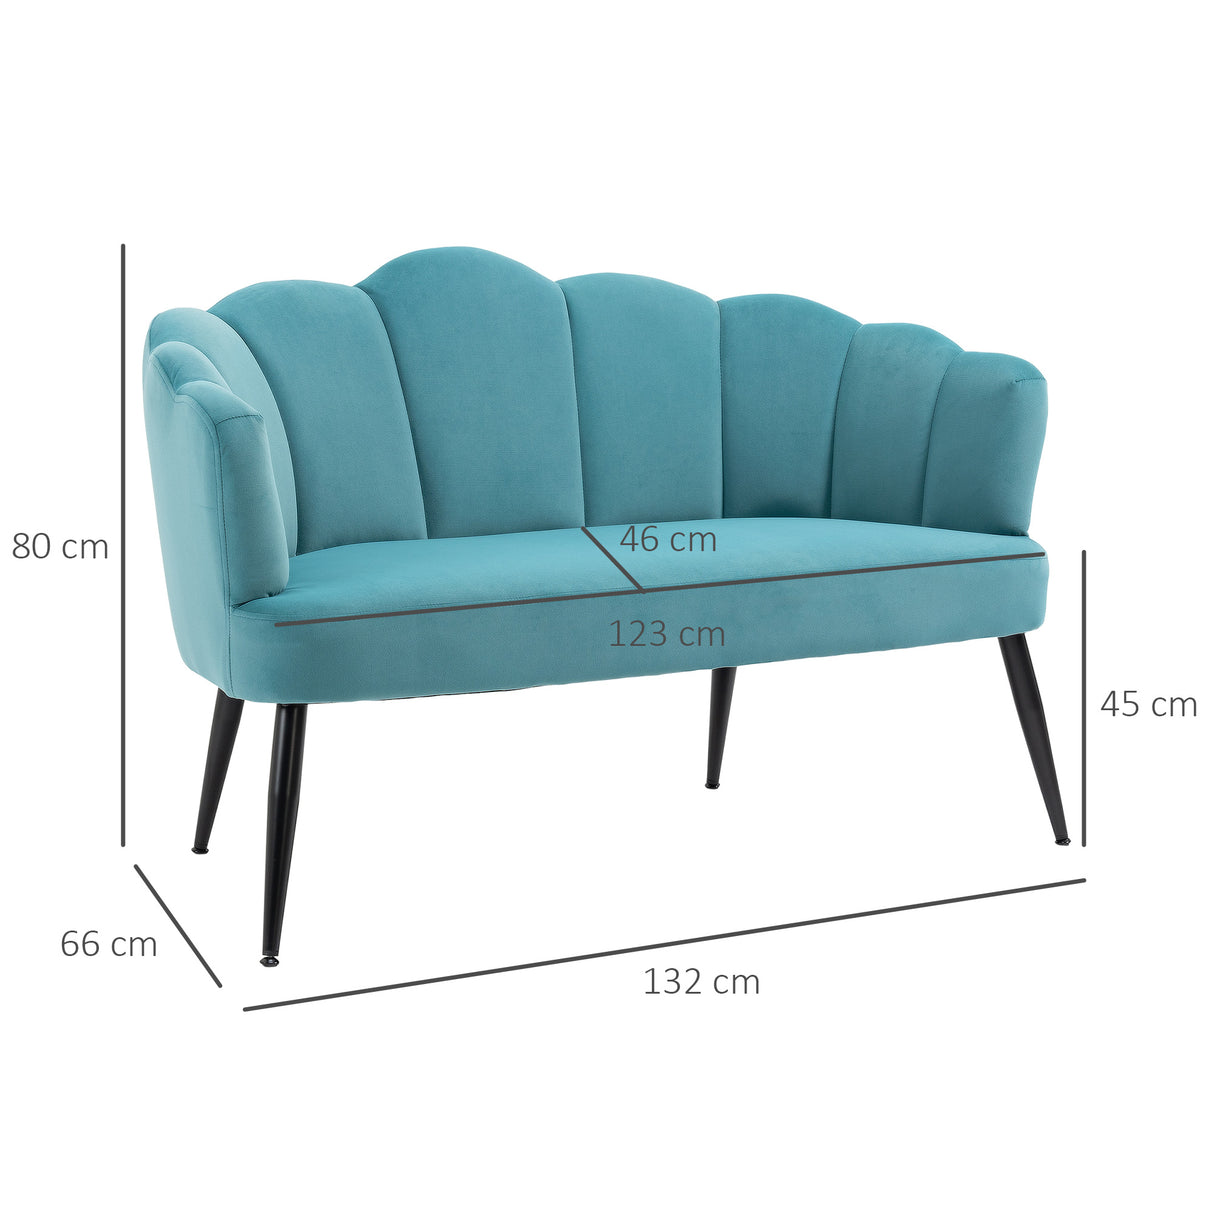 immagine-3-easycomfort-easycomfort-divano-2-posti-in-velluto-con-gambe-in-metallo-e-schienale-a-conchiglia-132x66x80cm-verde